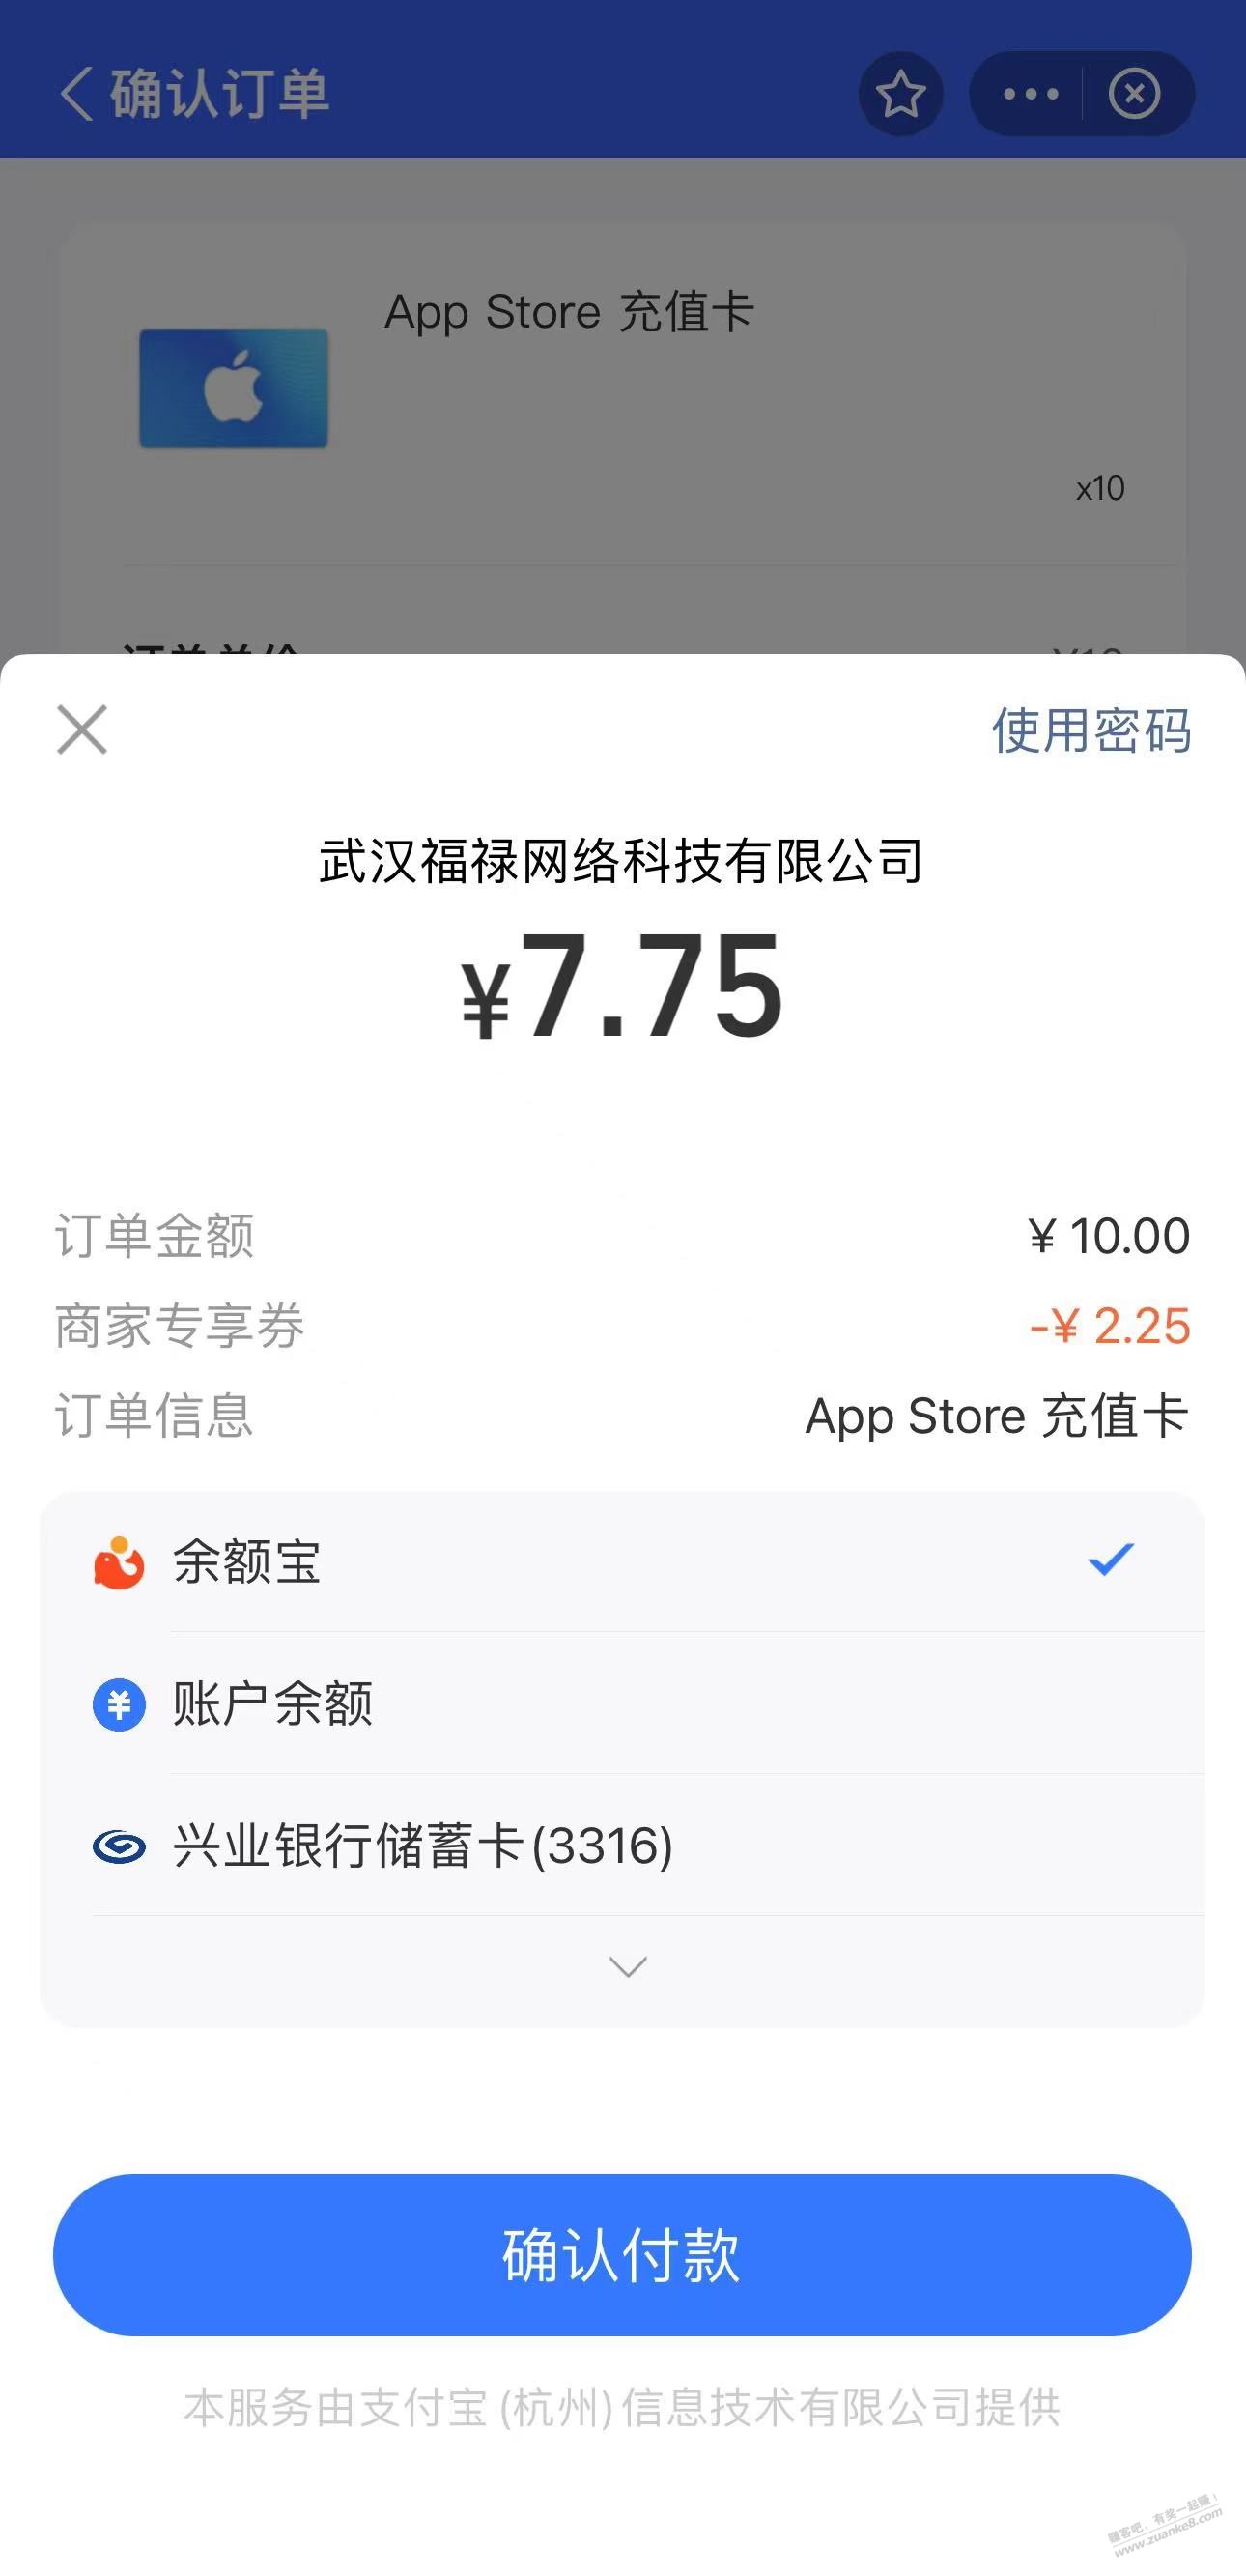 7.75折App Store充值卡 - 线报酷